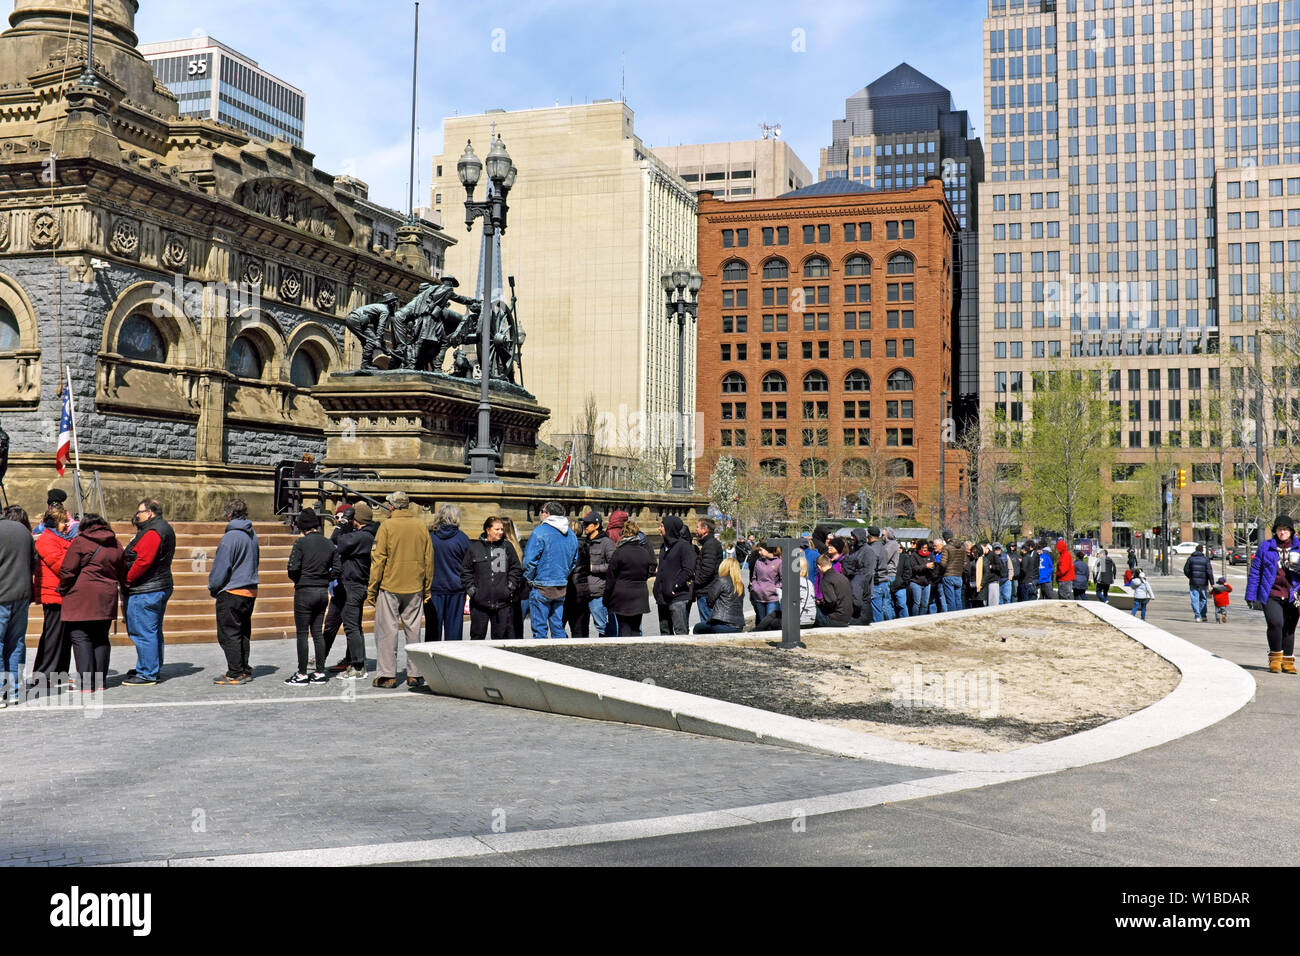 Besucher des öffentlichen Platzes in Cleveland, Ohio, warten am 27. April 2019 auf eine Führung durch das Soldiers and Sailors Monument. Stockfoto